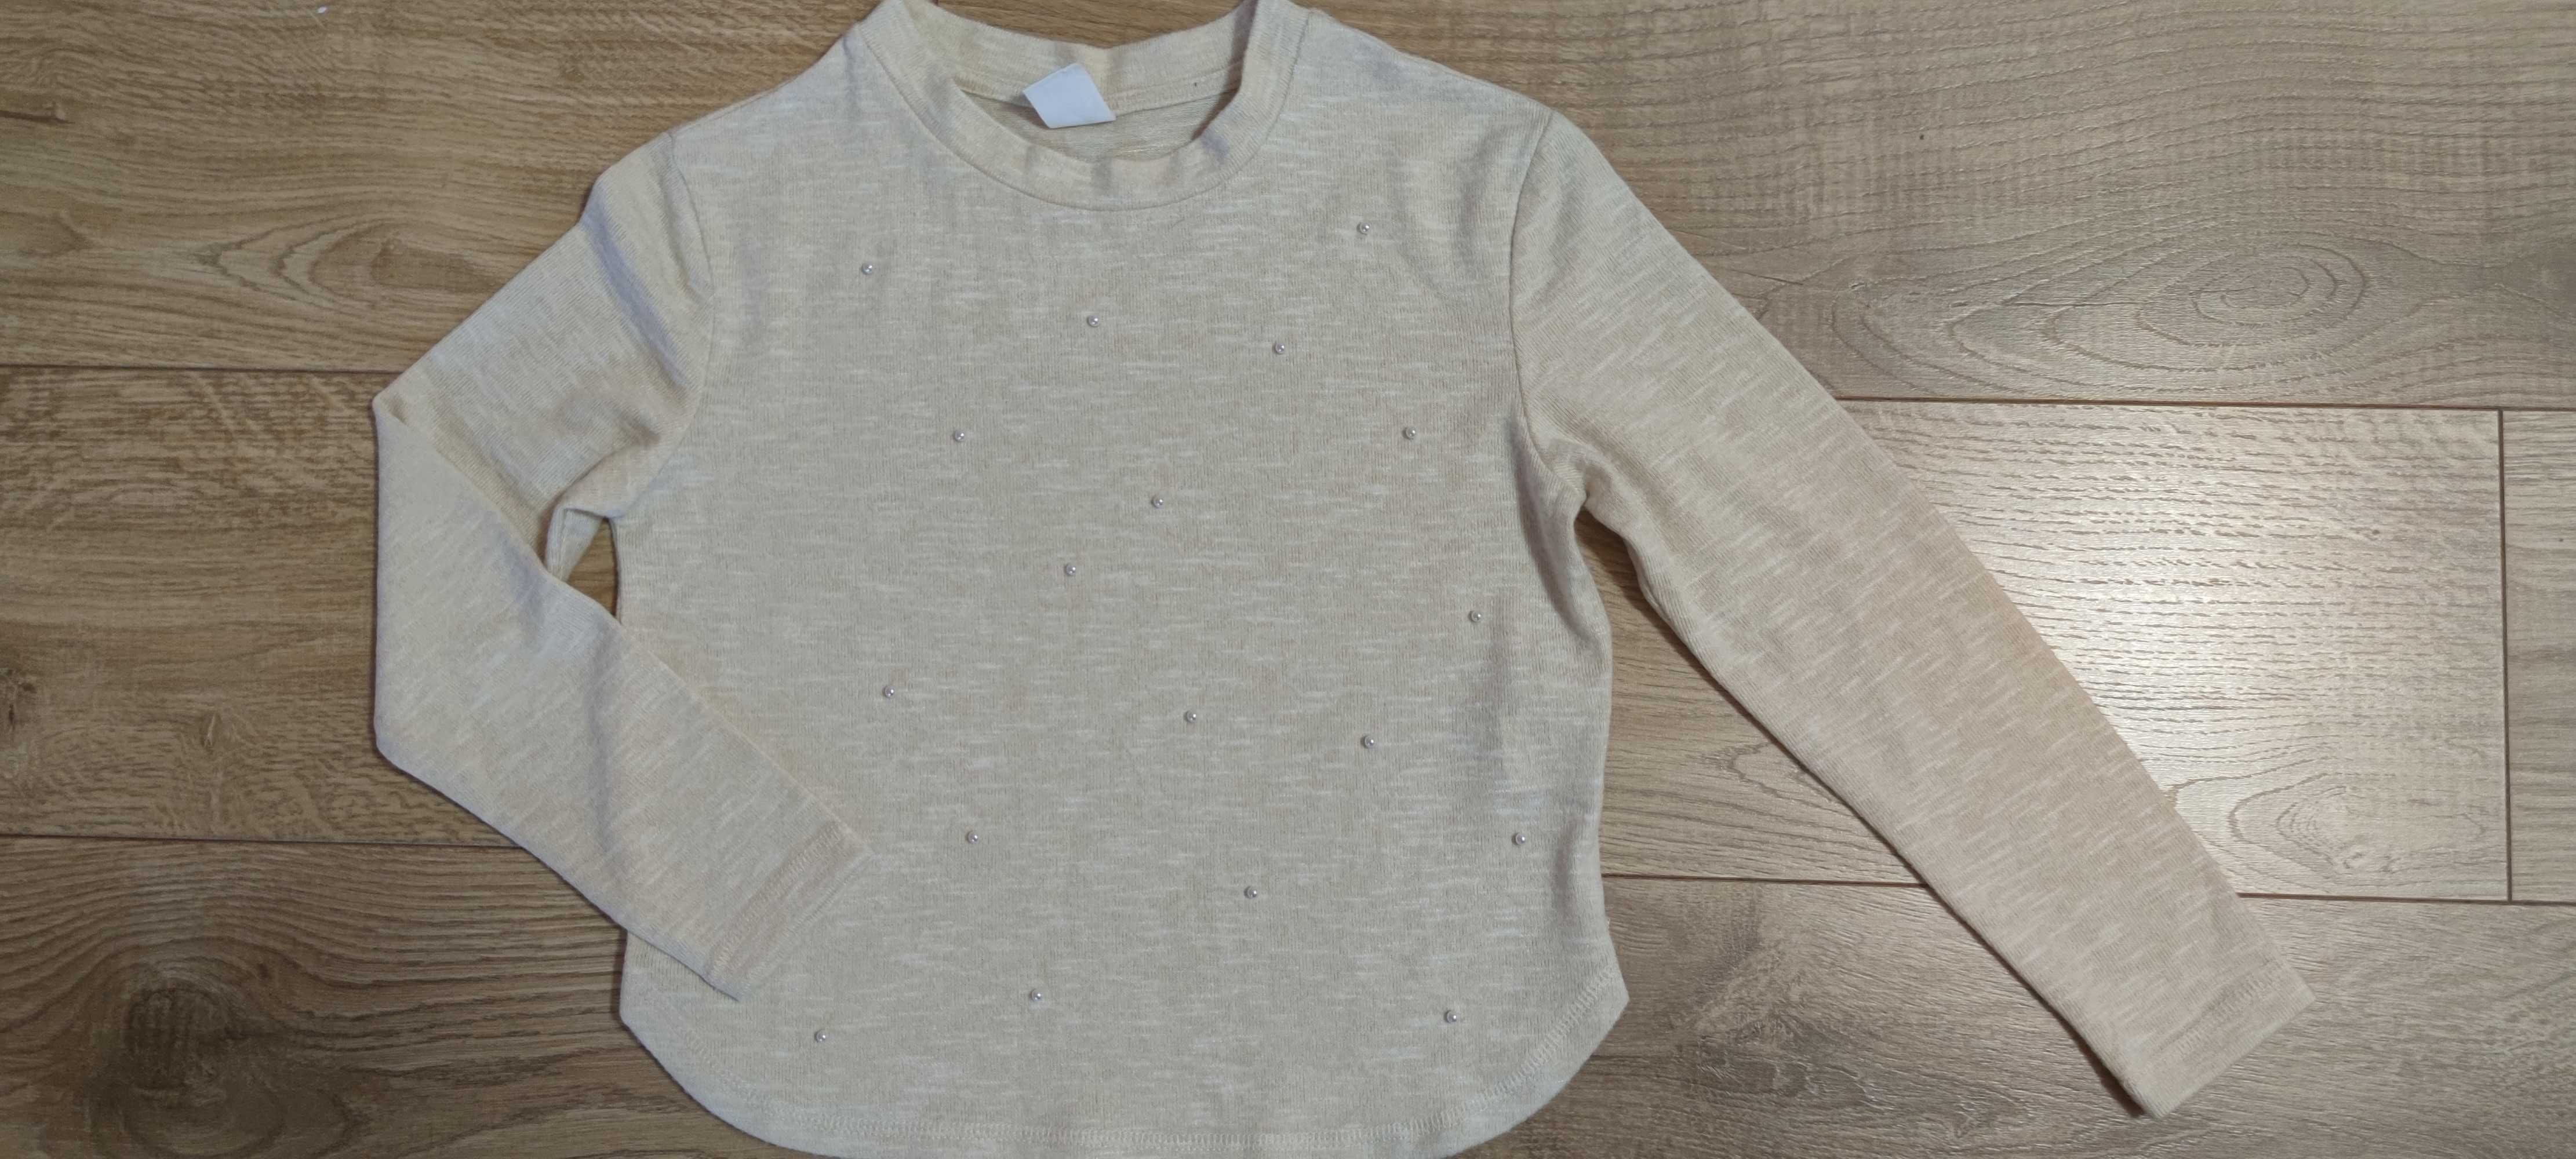 Jak nowa 134 Smyk elegancka bluzka sweterek dla dziewczynki